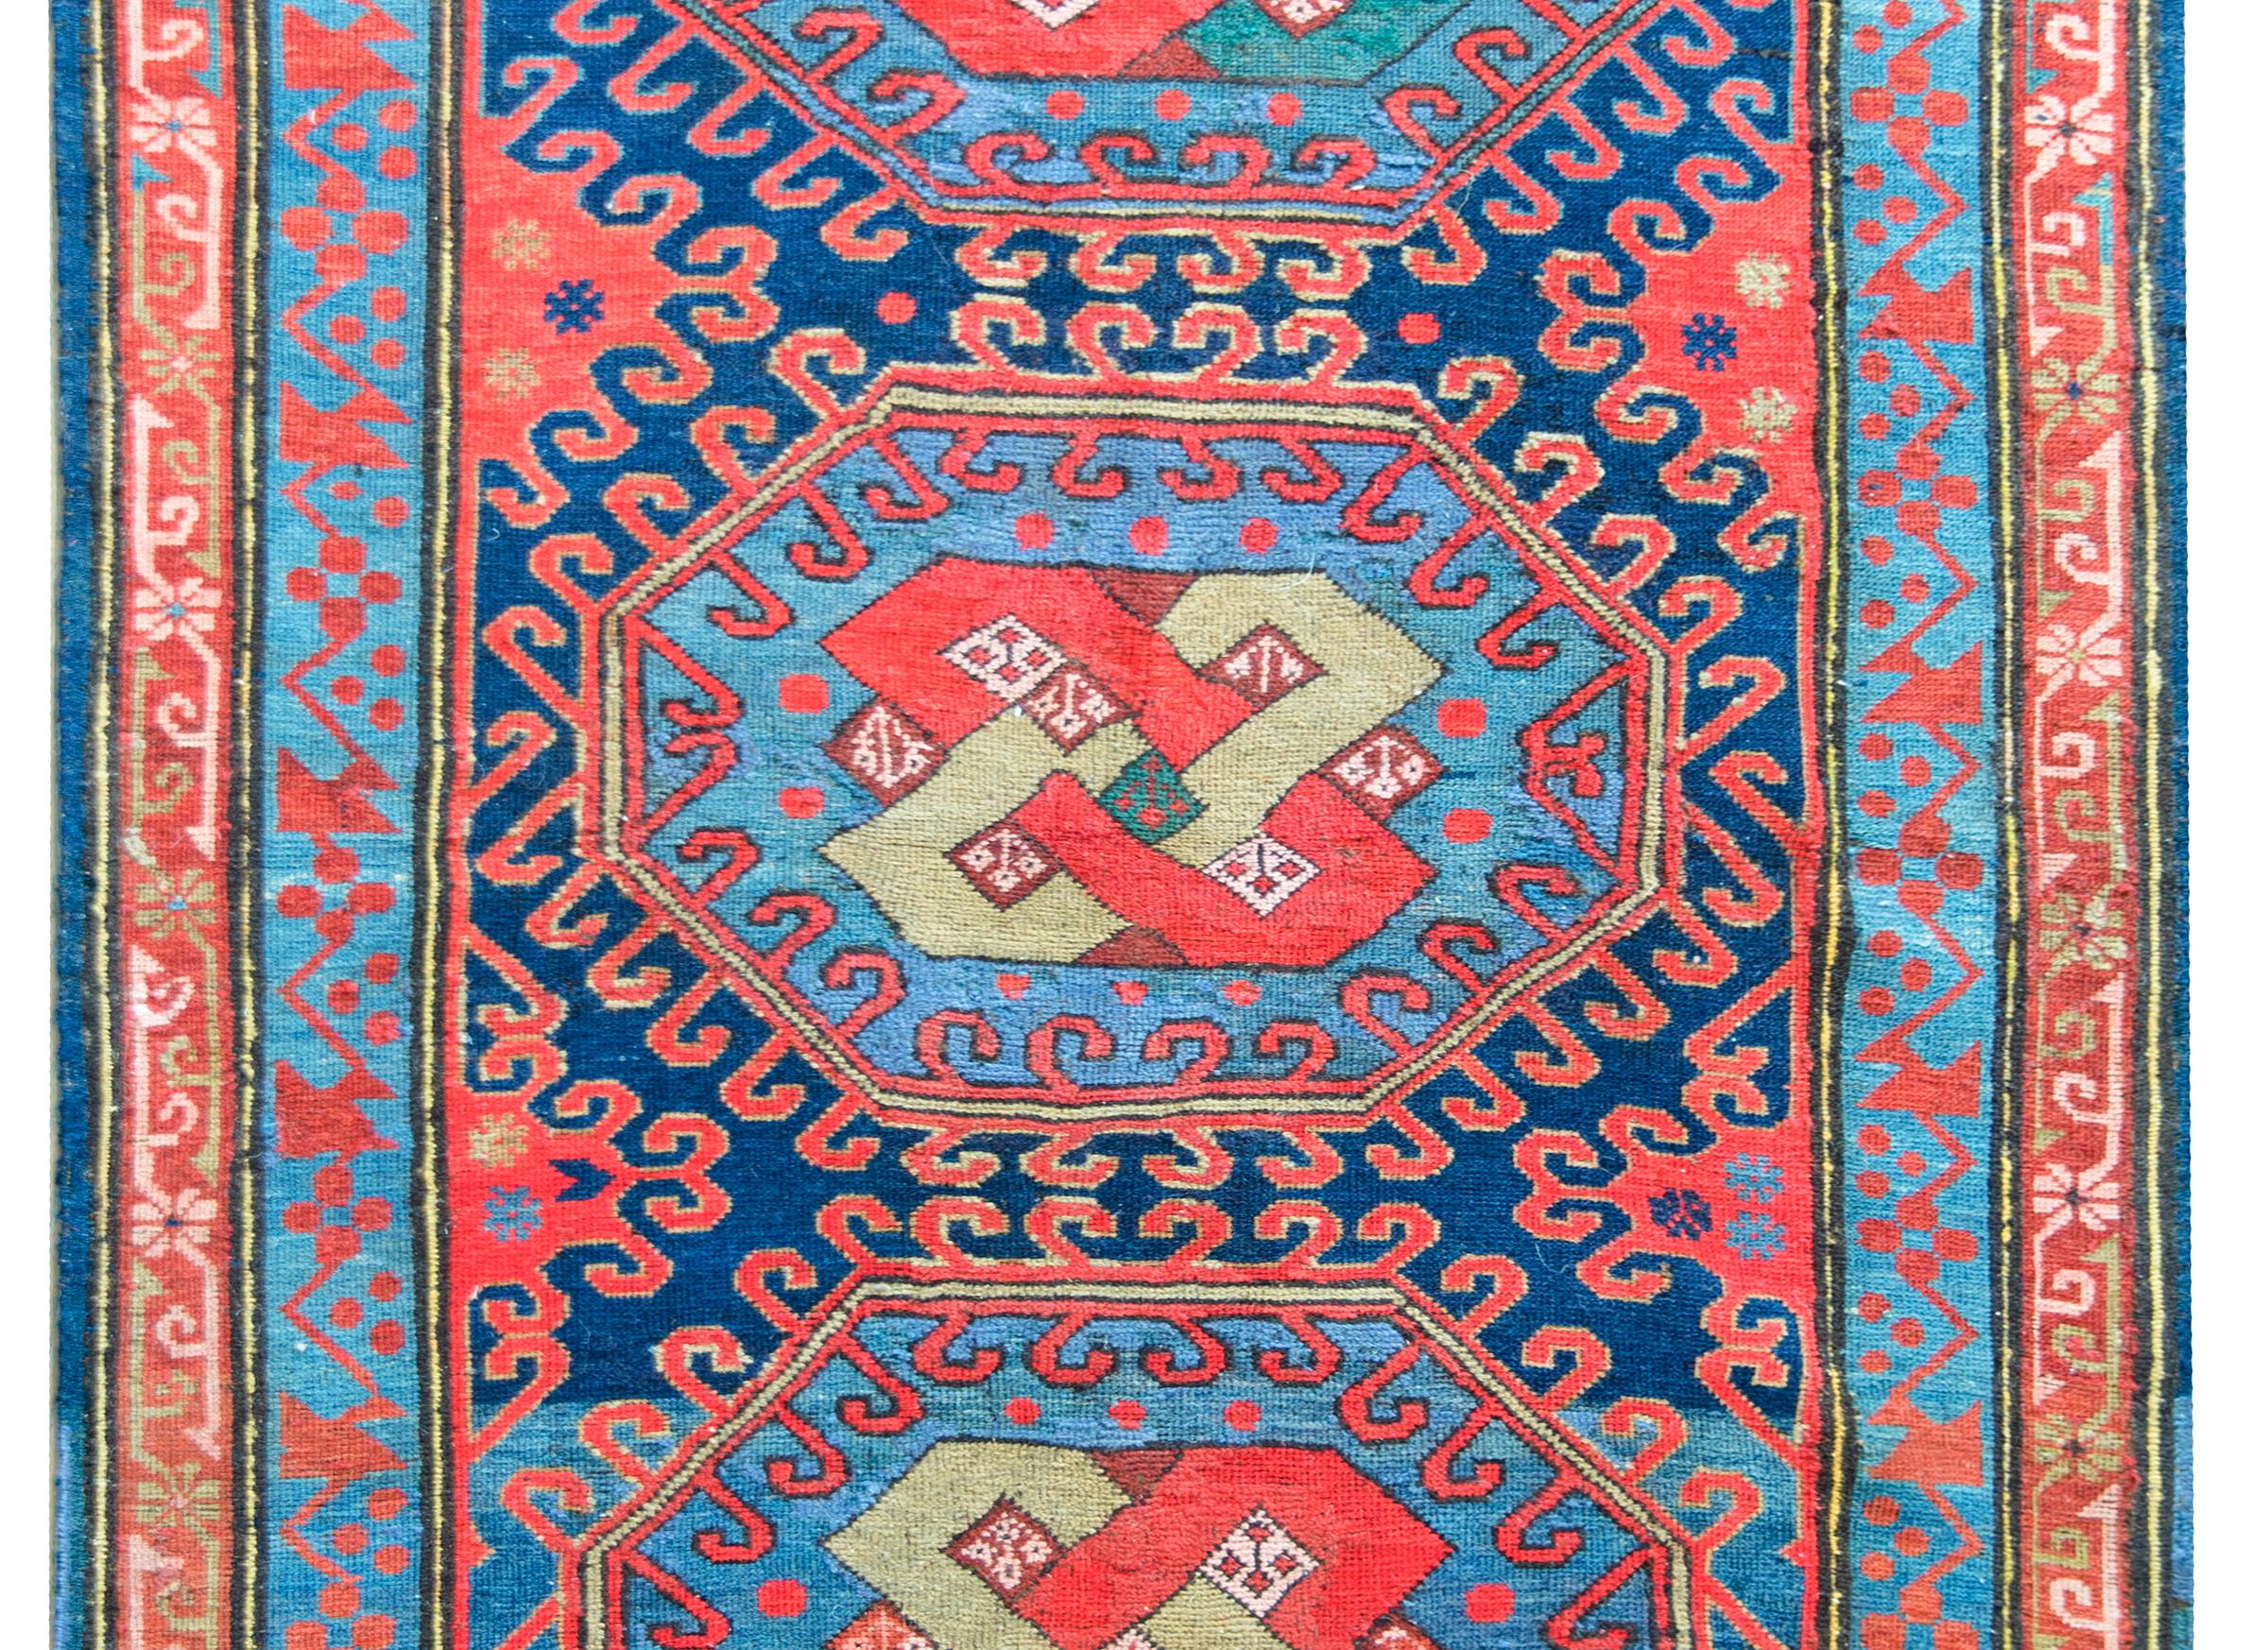 Un incroyable tapis persan Kazak du début du 20e siècle avec trois médaillons centraux présentant chacun un motif de nœuds sans fin entouré de motifs floraux stylisés, le tout entouré d'une bordure complexe avec deux bandes à motifs floraux, le tout